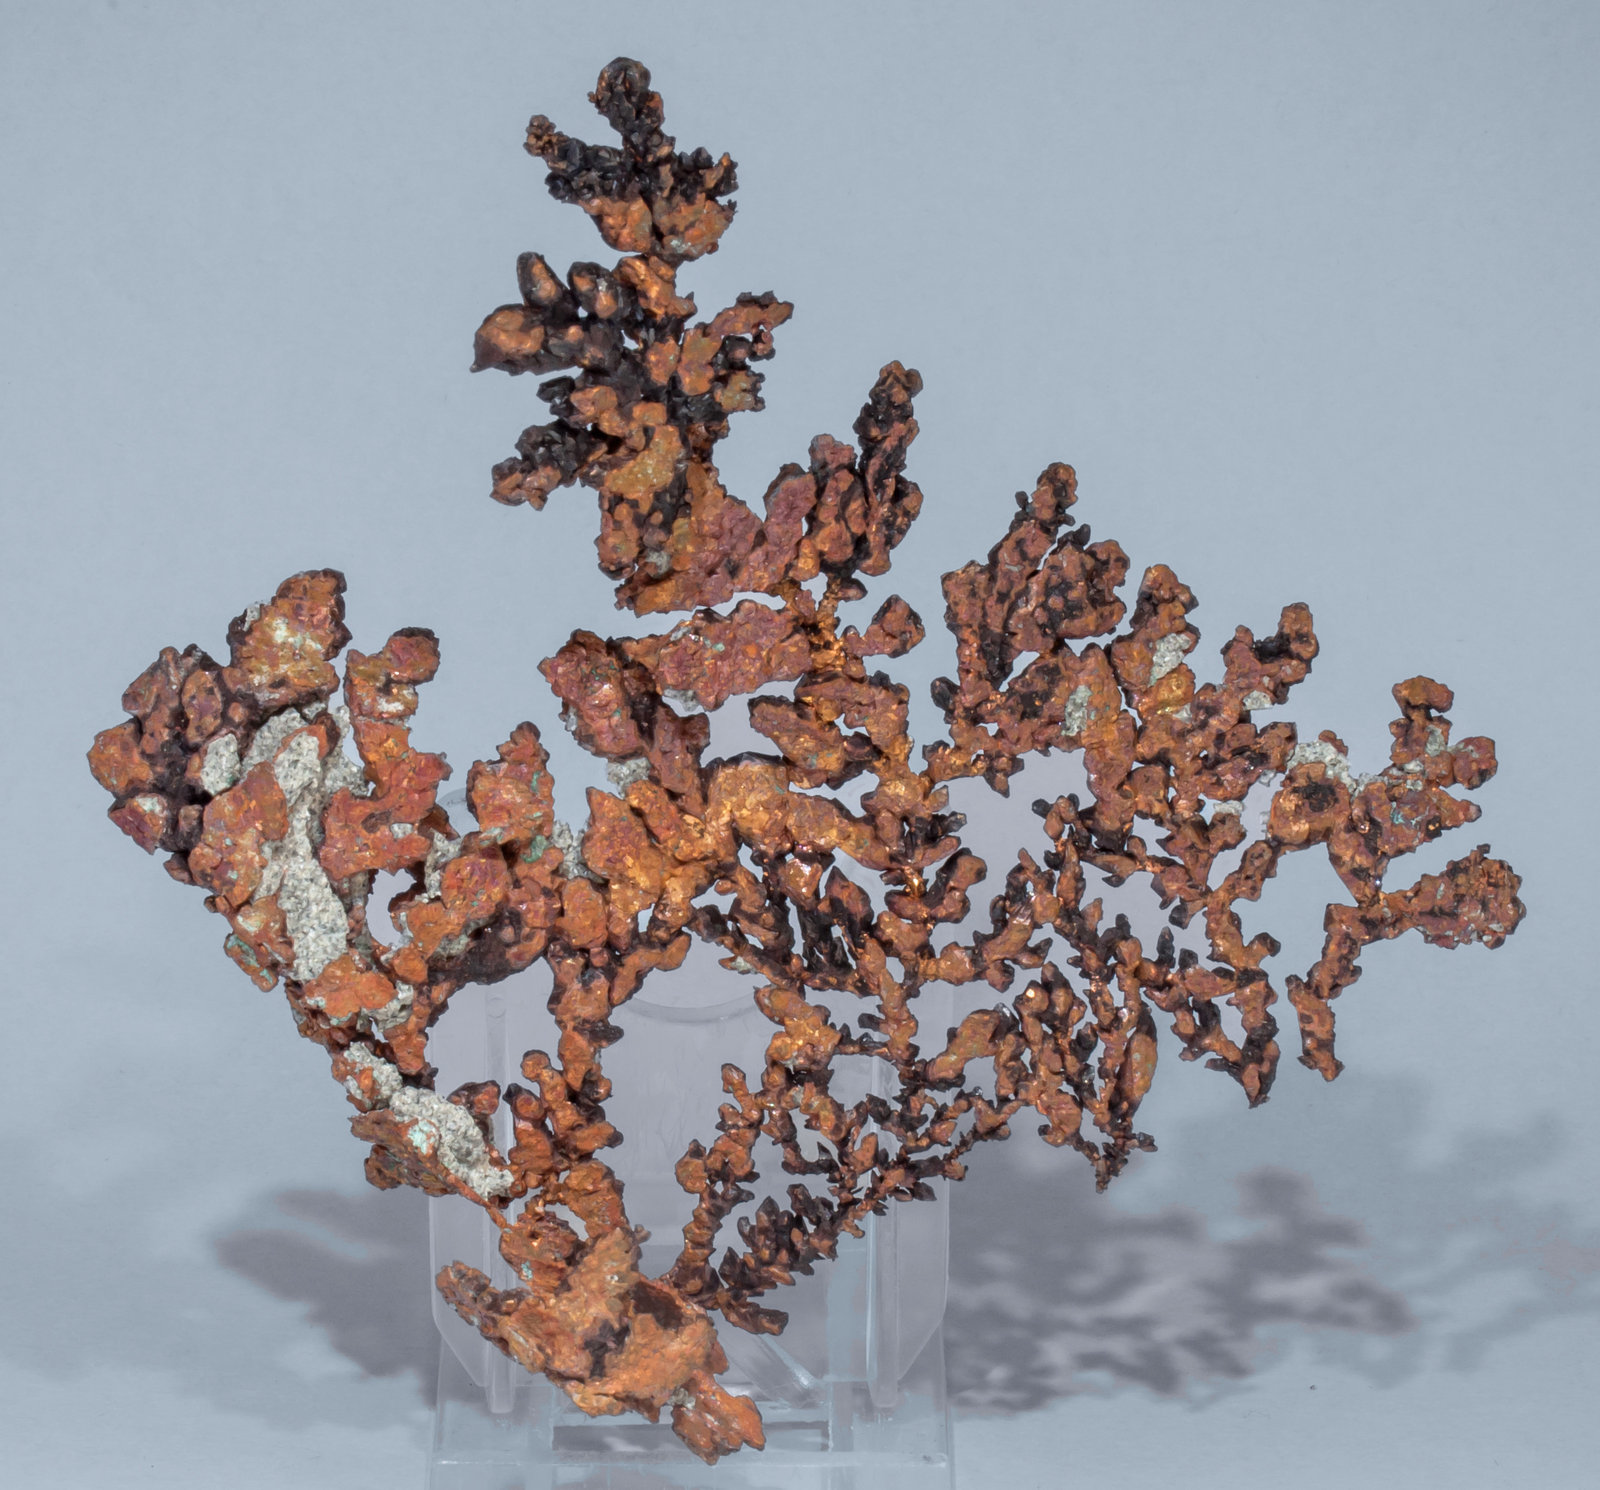 specimens/s_imagesAF8/Copper-TG56AF8f.jpg